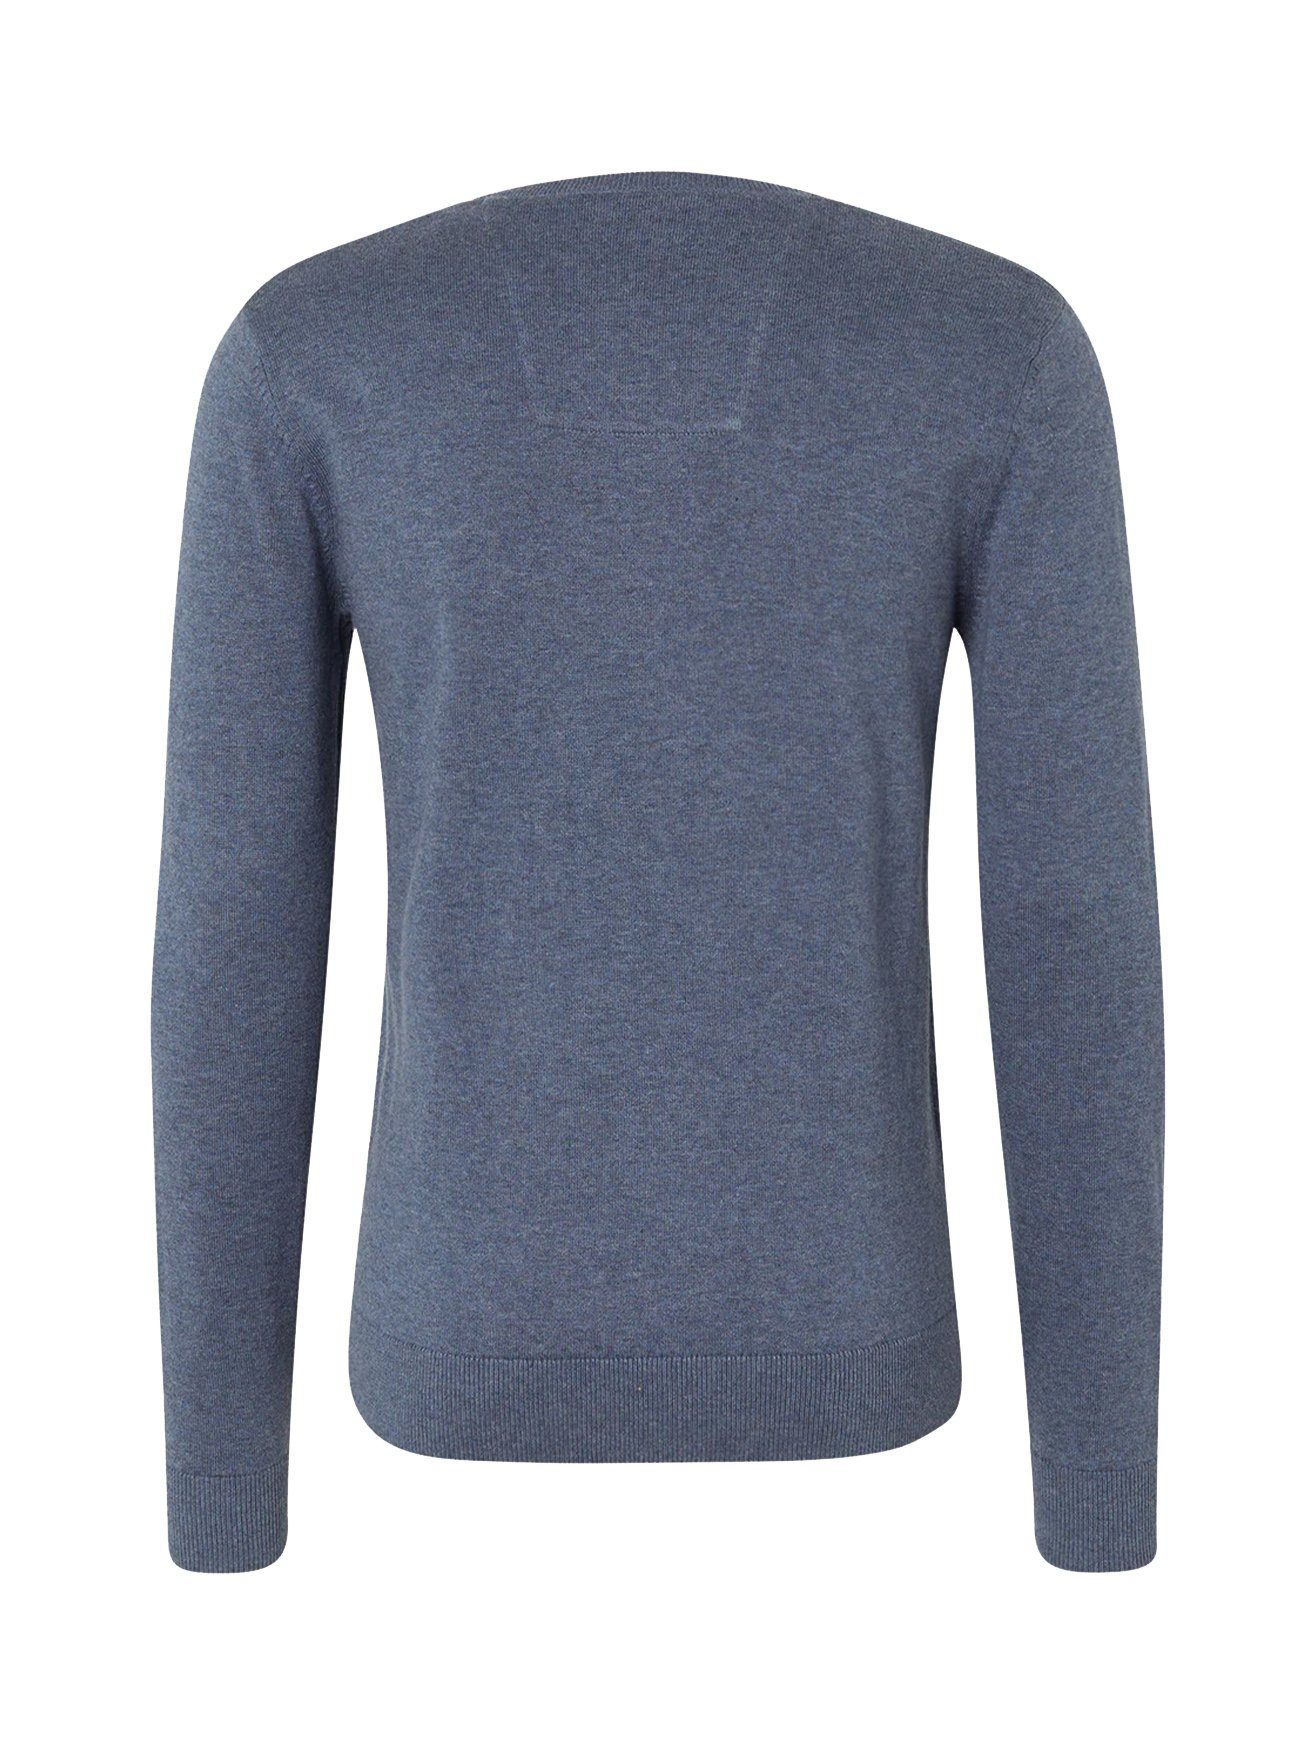 Feinstrick Pullover in Blau V-Ausschnitt 4652 Sweater Strickpullover TAILOR TOM Basic Dünner